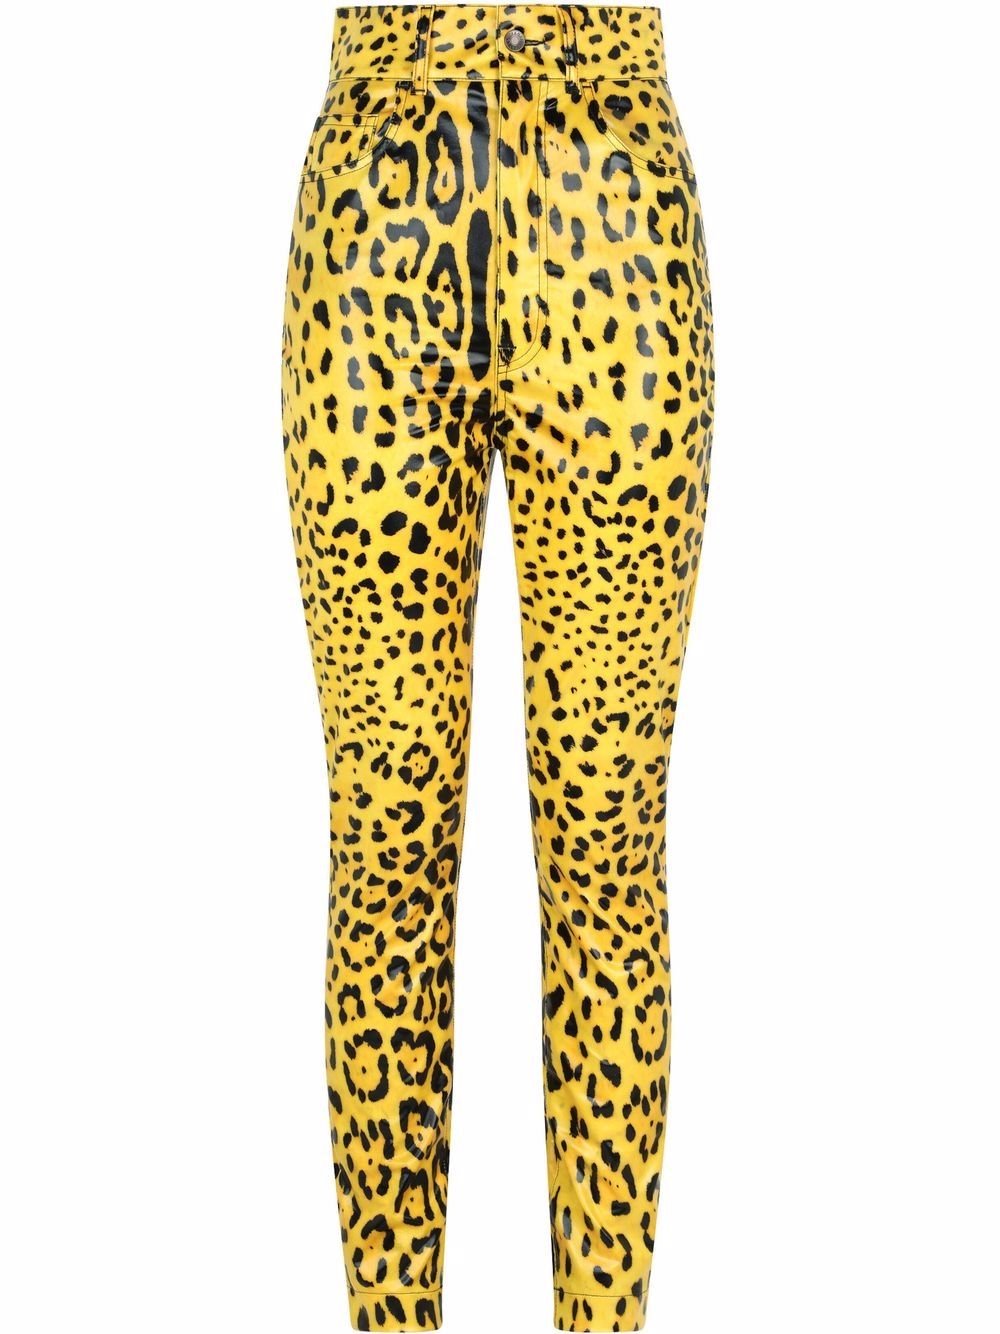 фото Dolce & gabbana брюки с леопардовым принтом